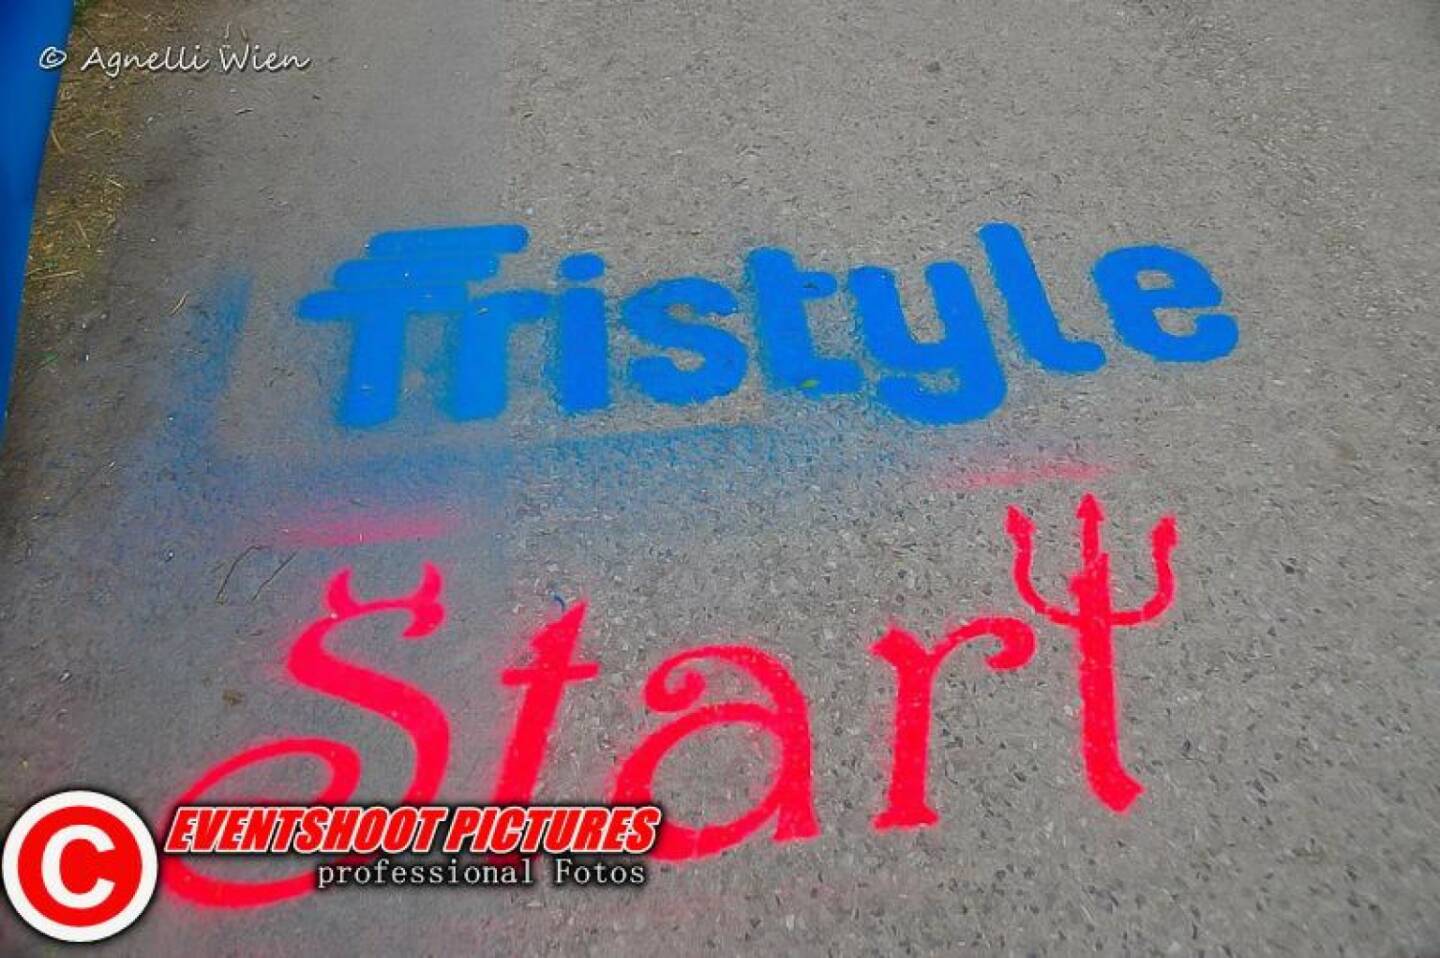 Tristyle Start  © Agnelli Wien